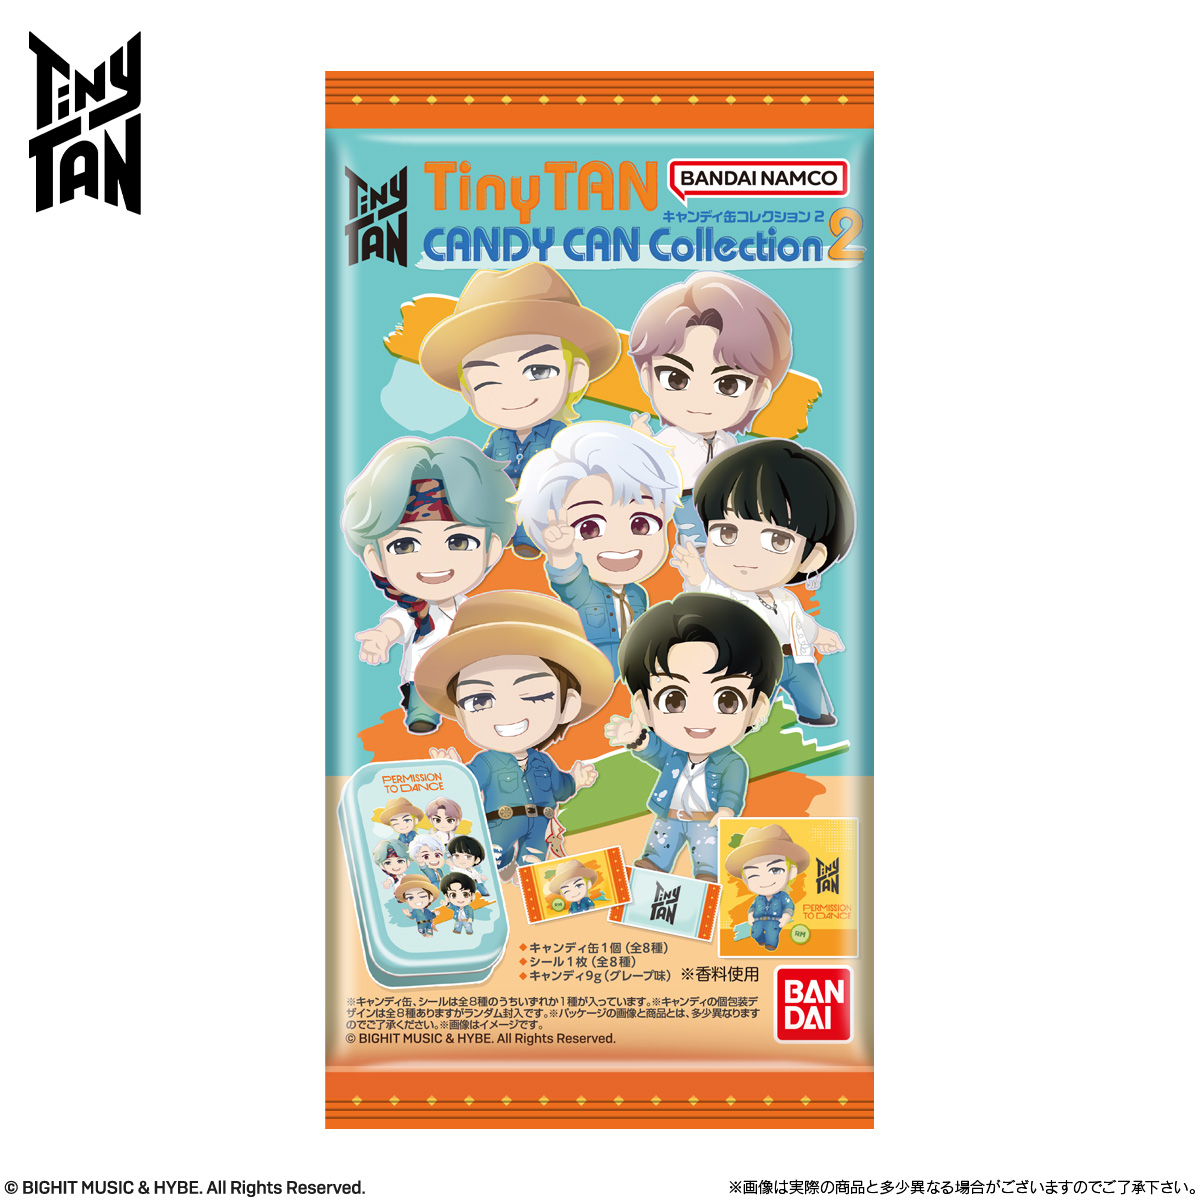 【食玩】タイニータン『TinyTAN キャンディ缶コレクション2』8個入りBOX-008